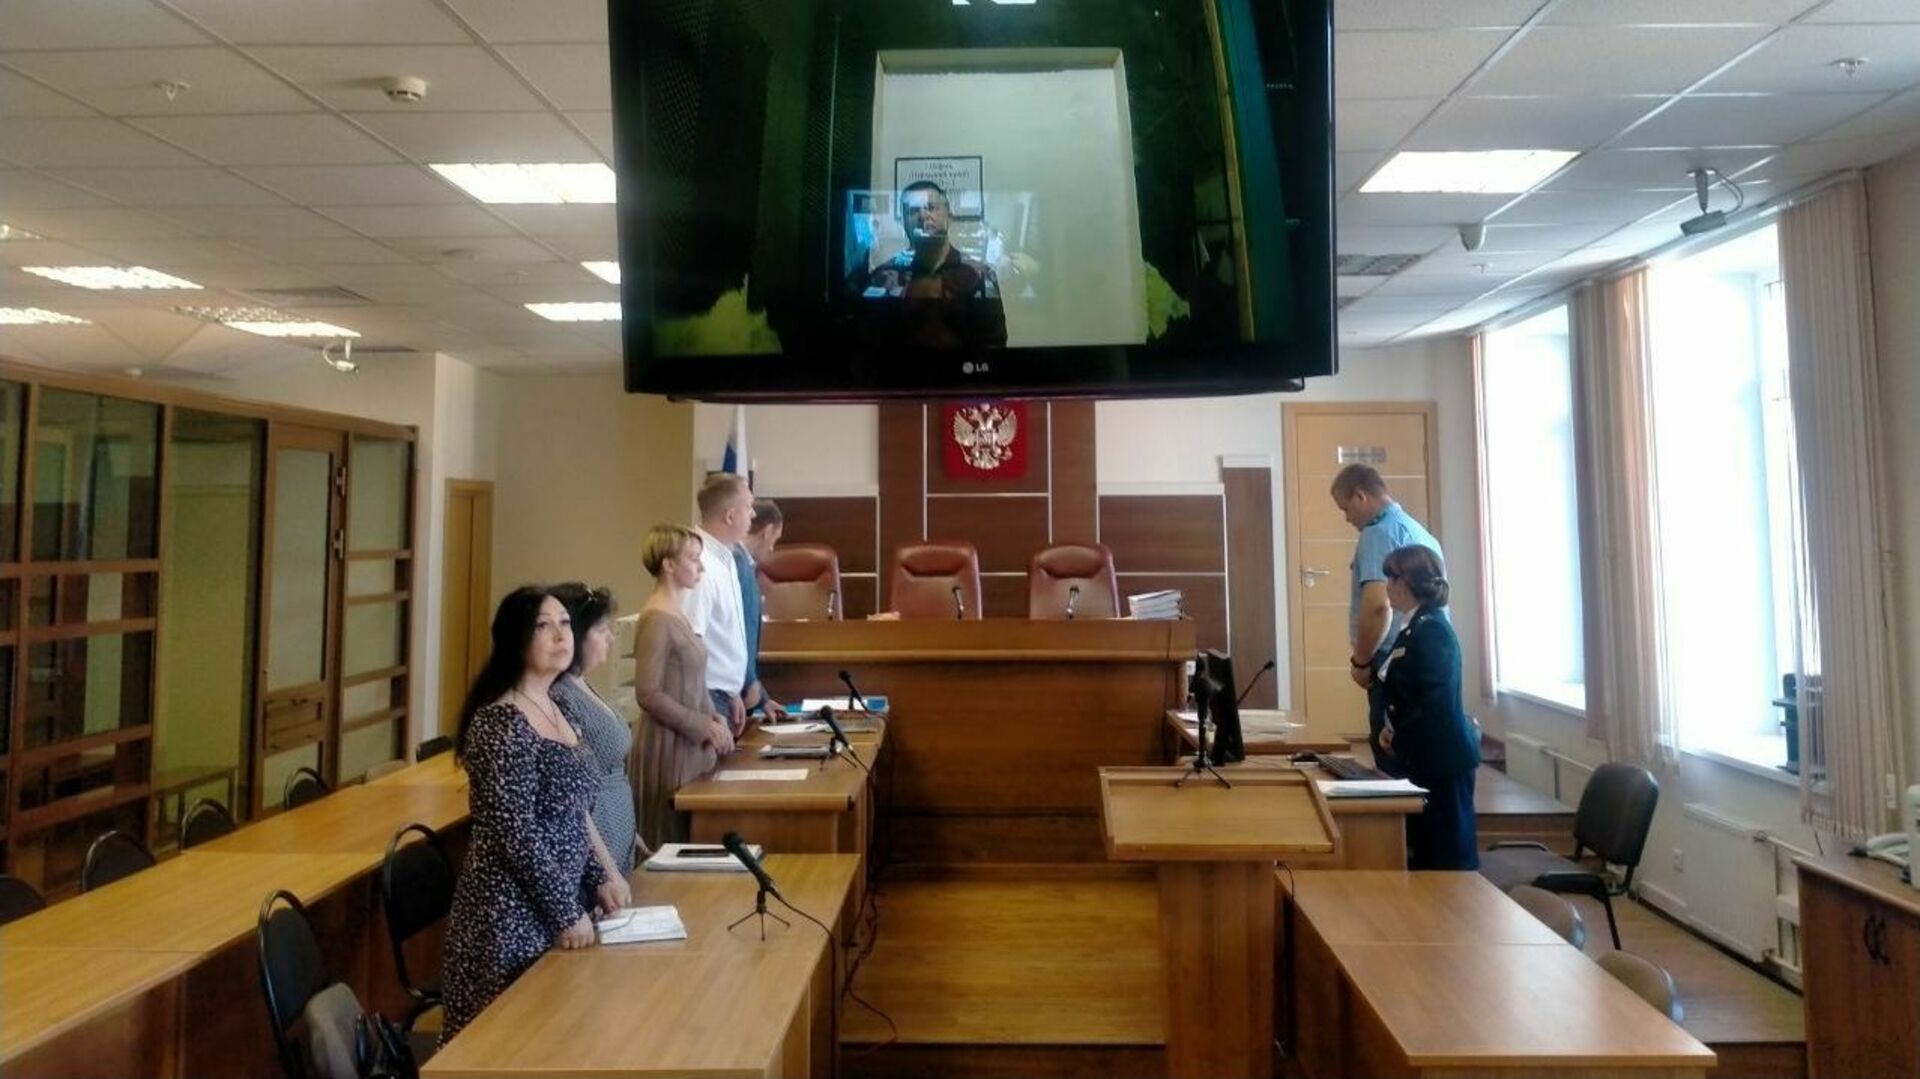 Ленинский суд пермского края